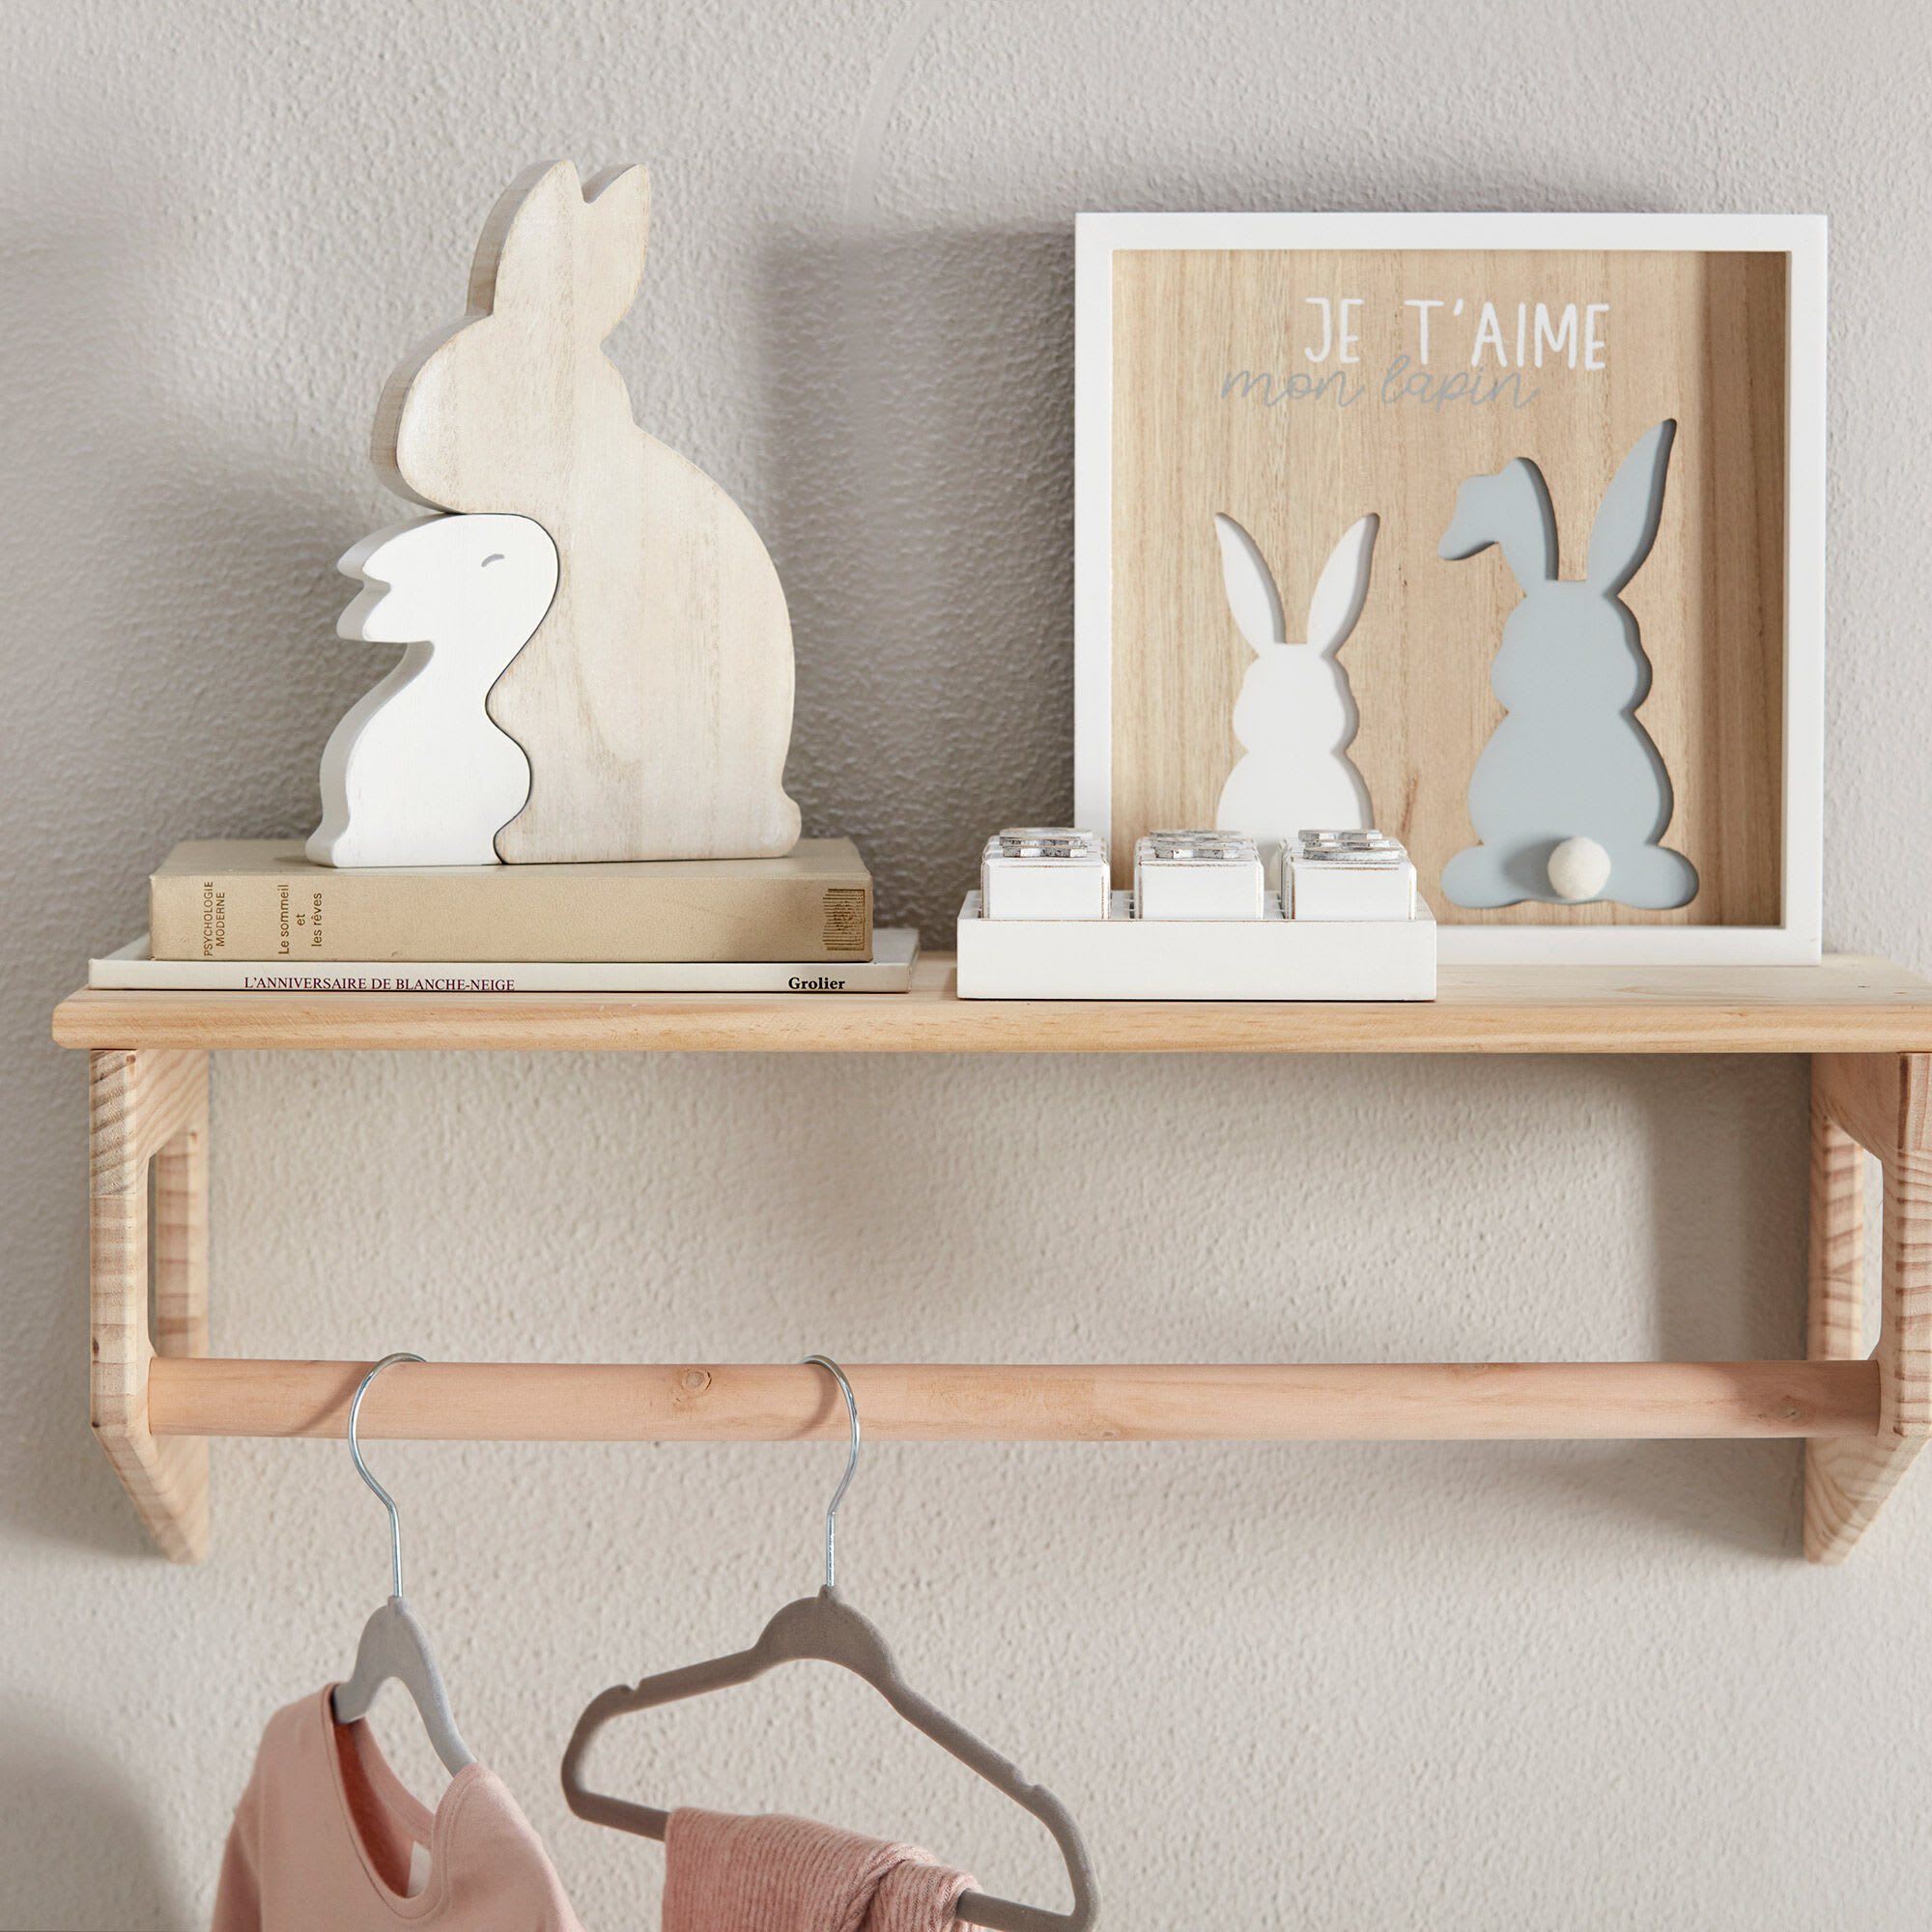 Decorative Wooden Rabbits